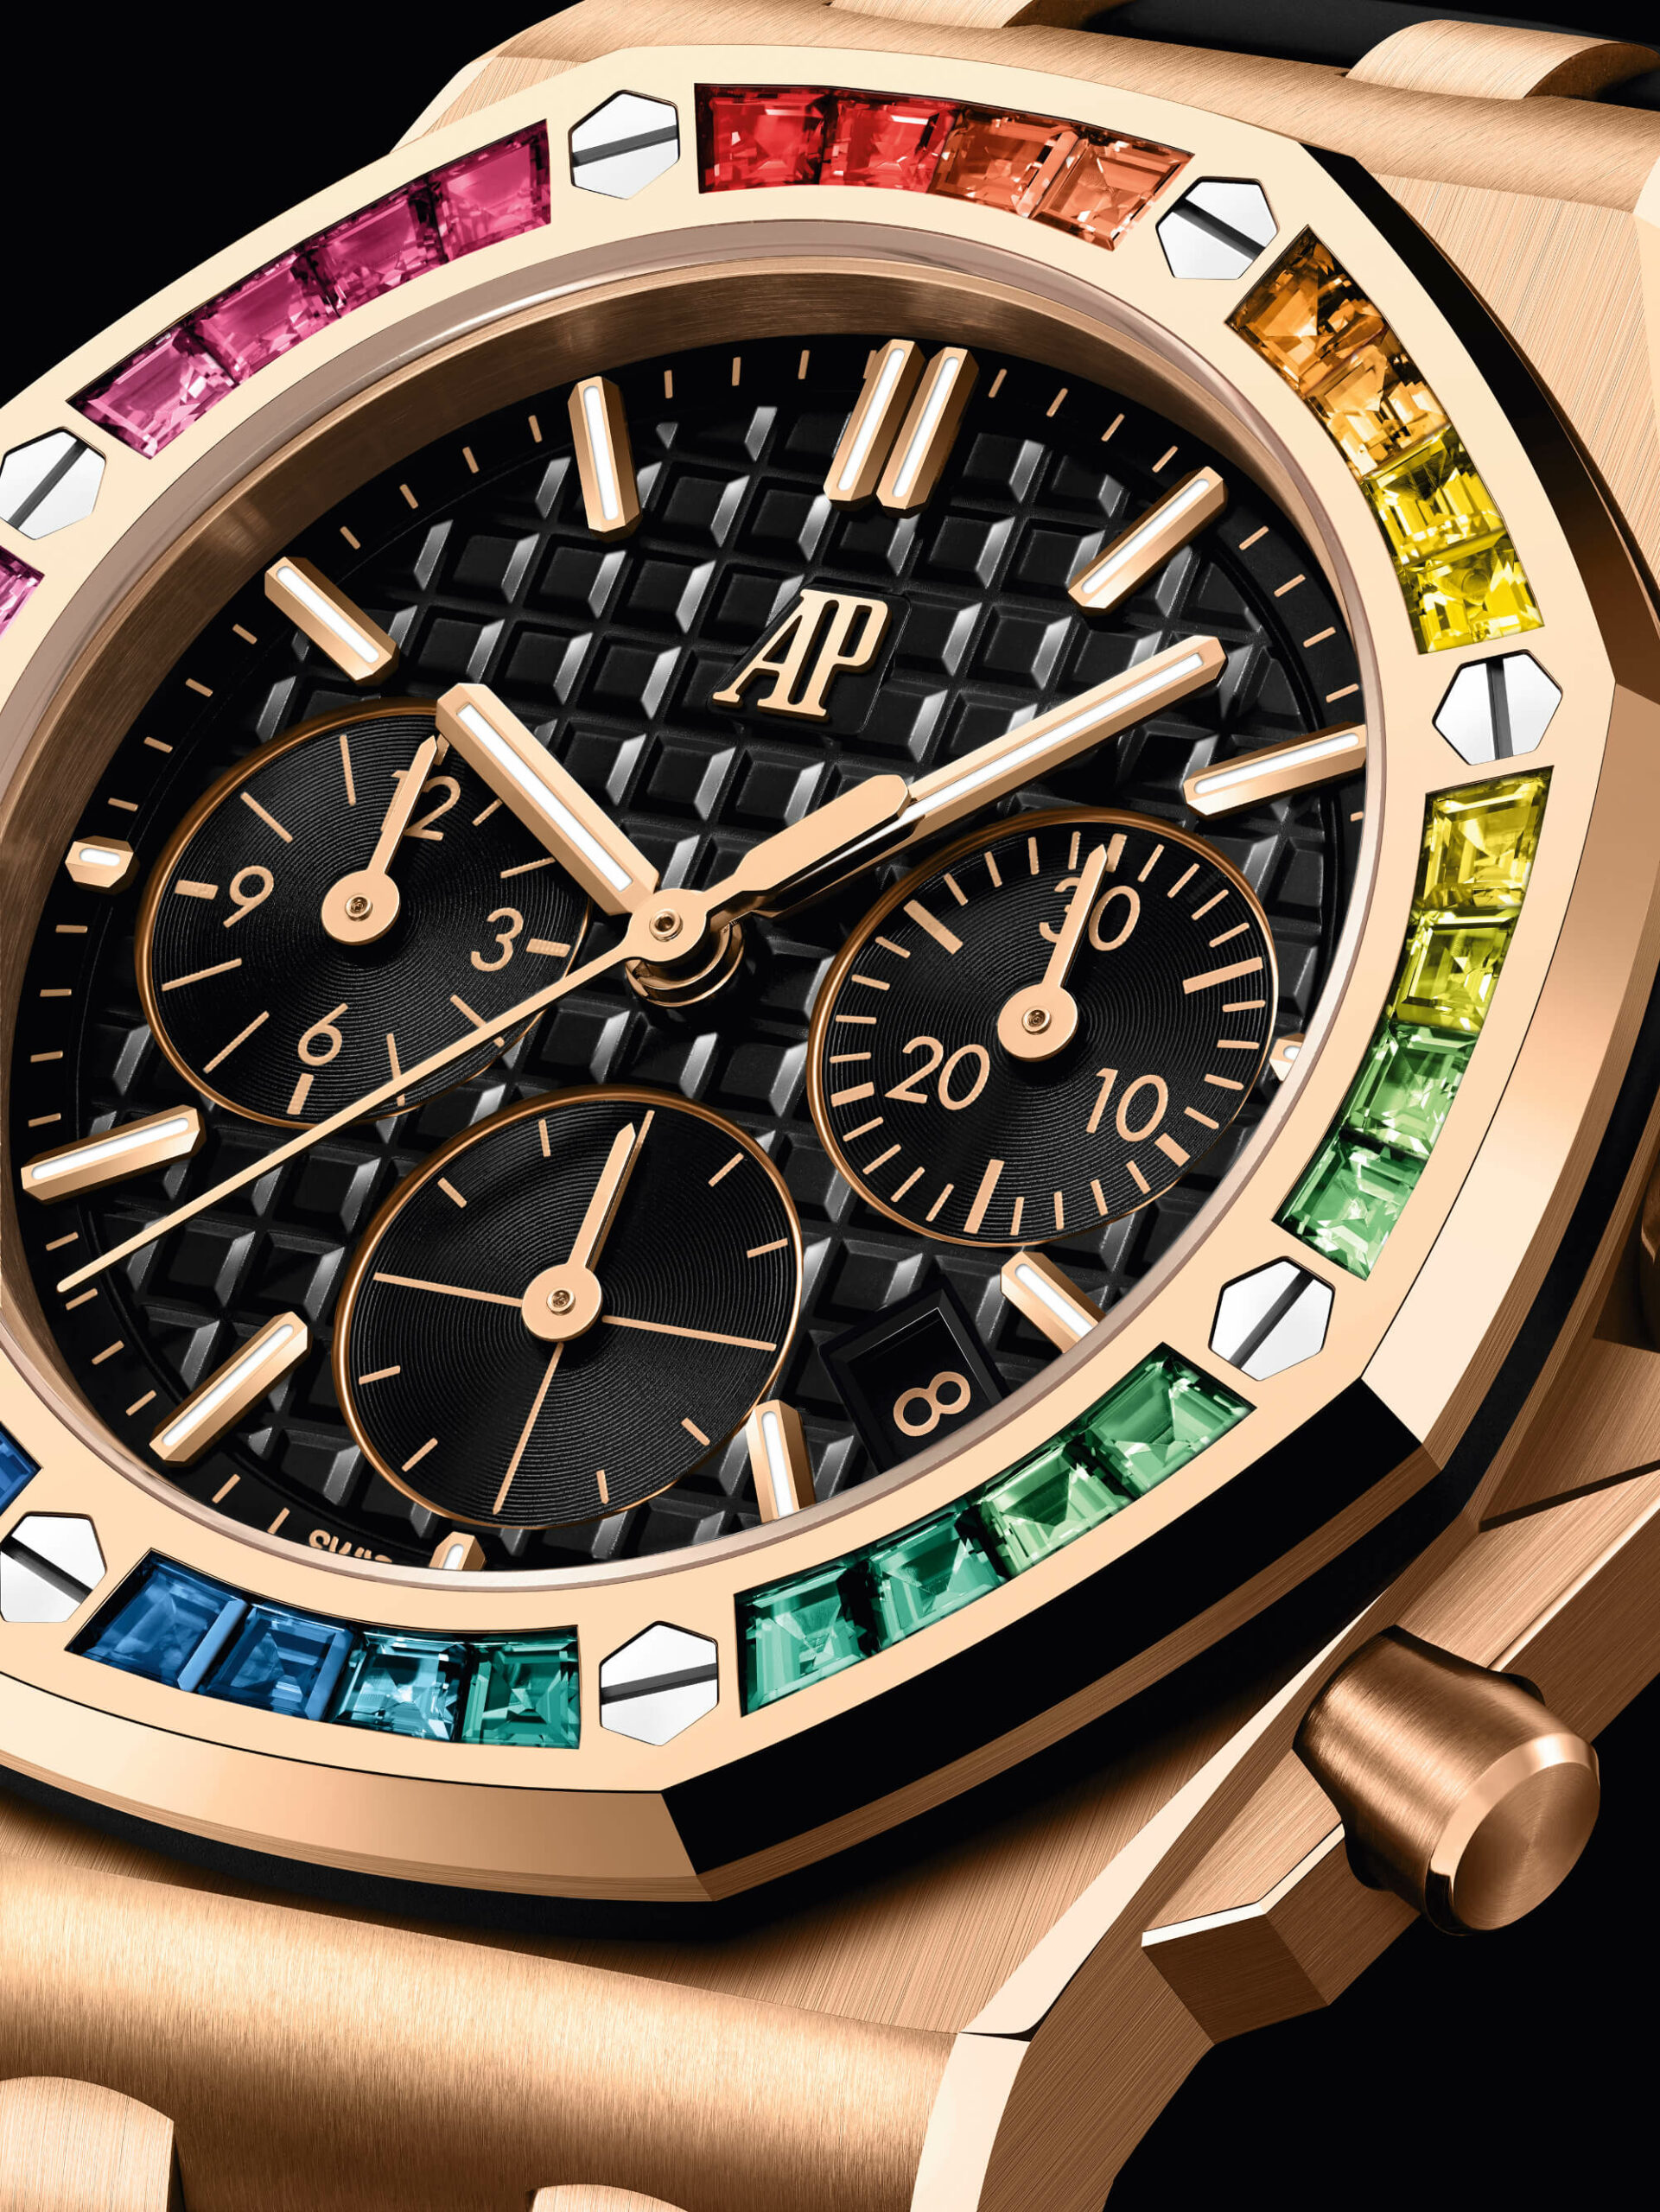 Новый релиз: Audemars Piguet представляет пять новых 37-миллиметровых часов Royal Oak Offshore